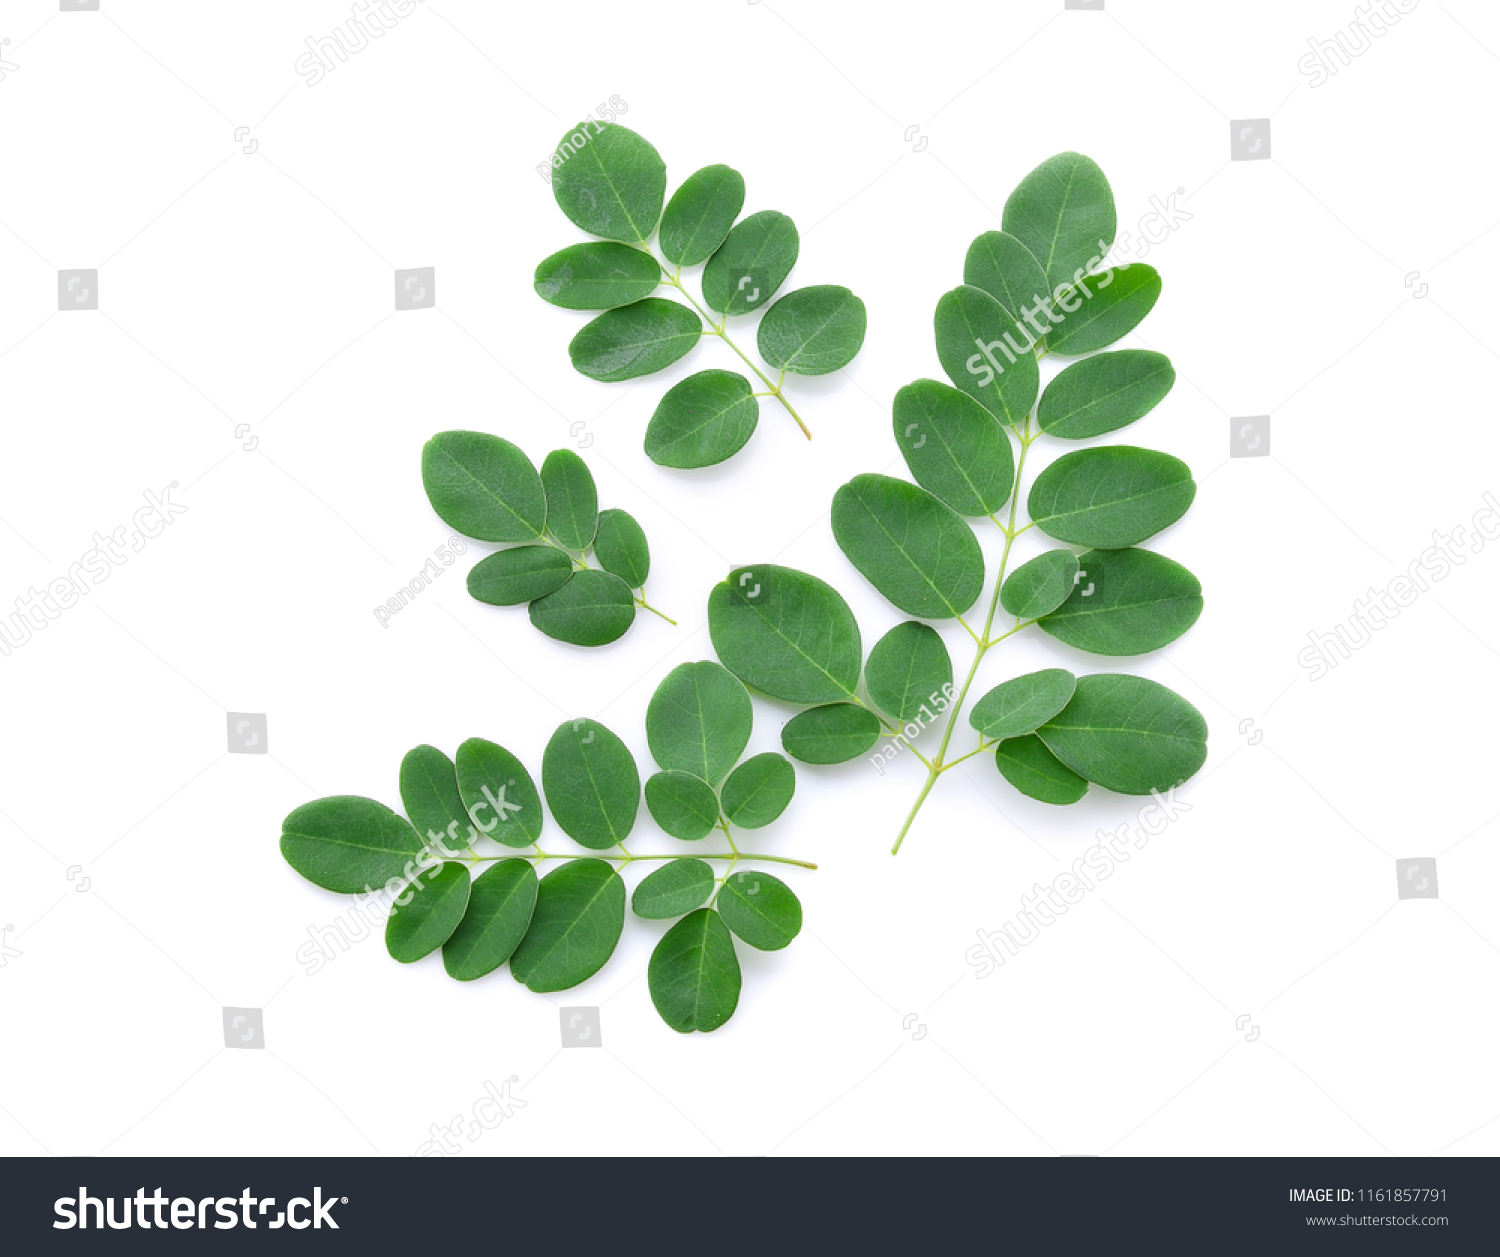 Moringa leaves isolated on white background. #1161857791